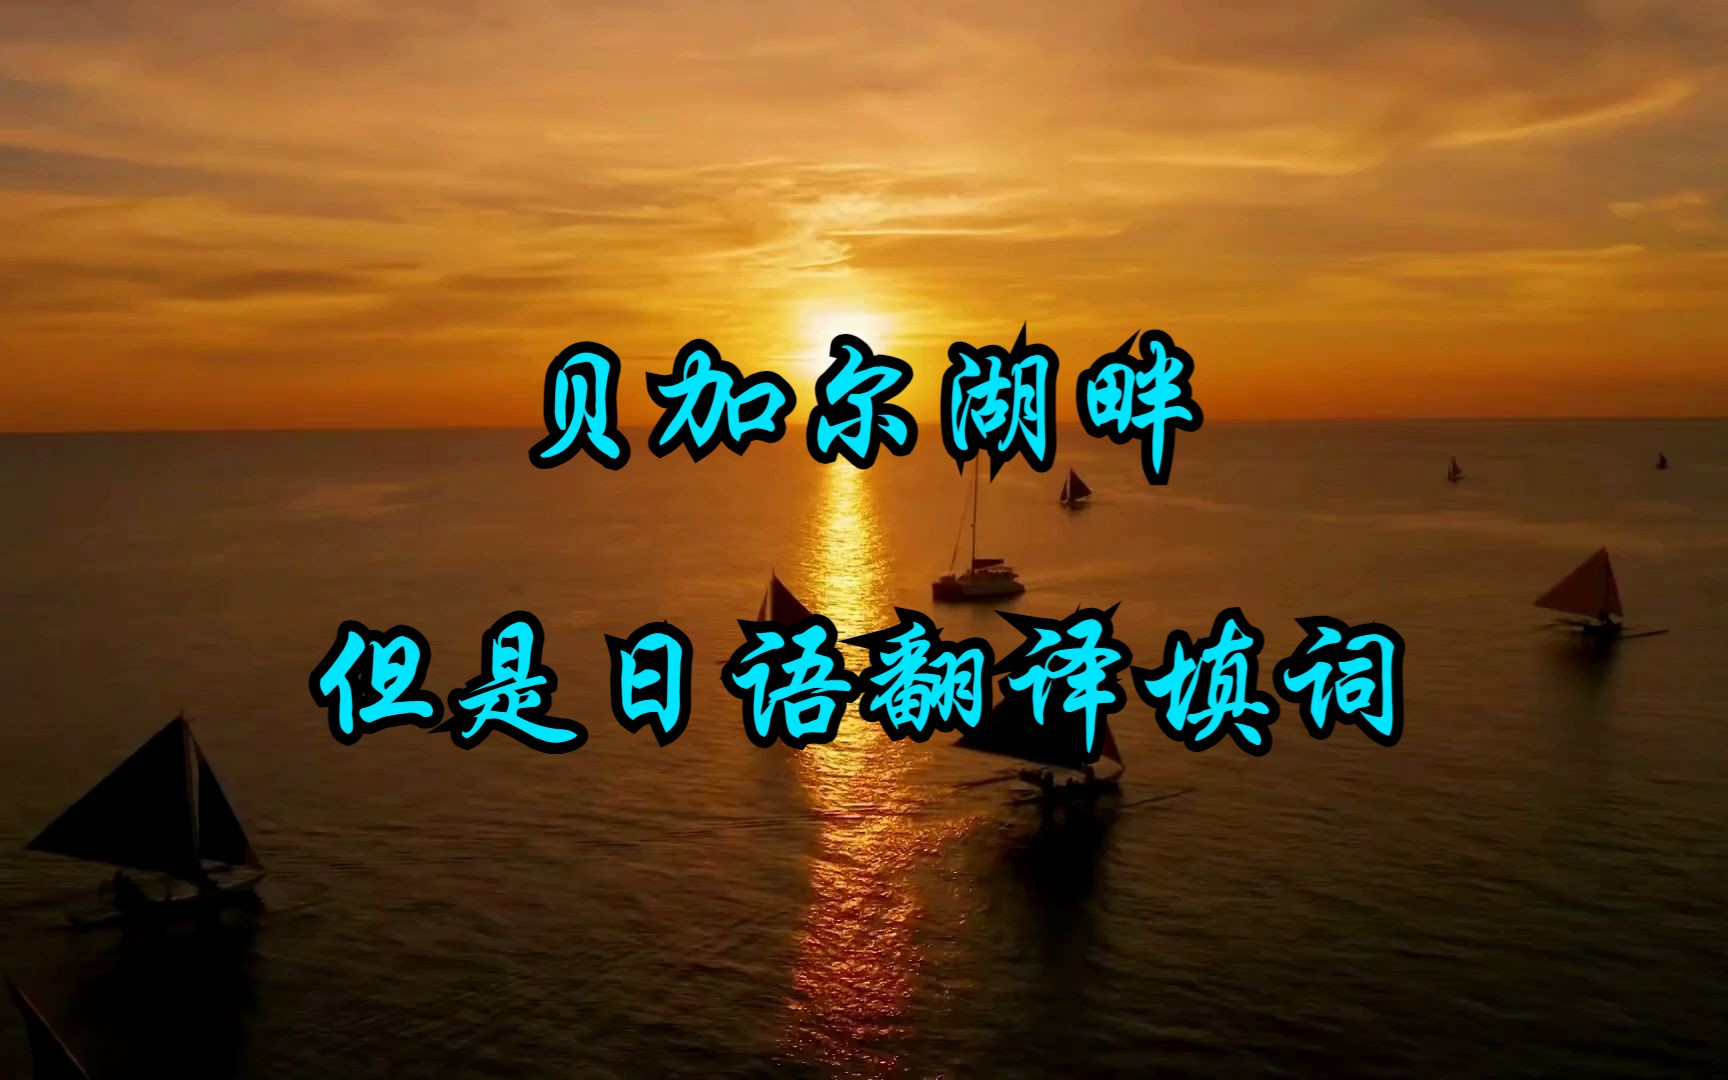 【贝加尔湖畔 中文原唱】，但是日语翻译填词字幕